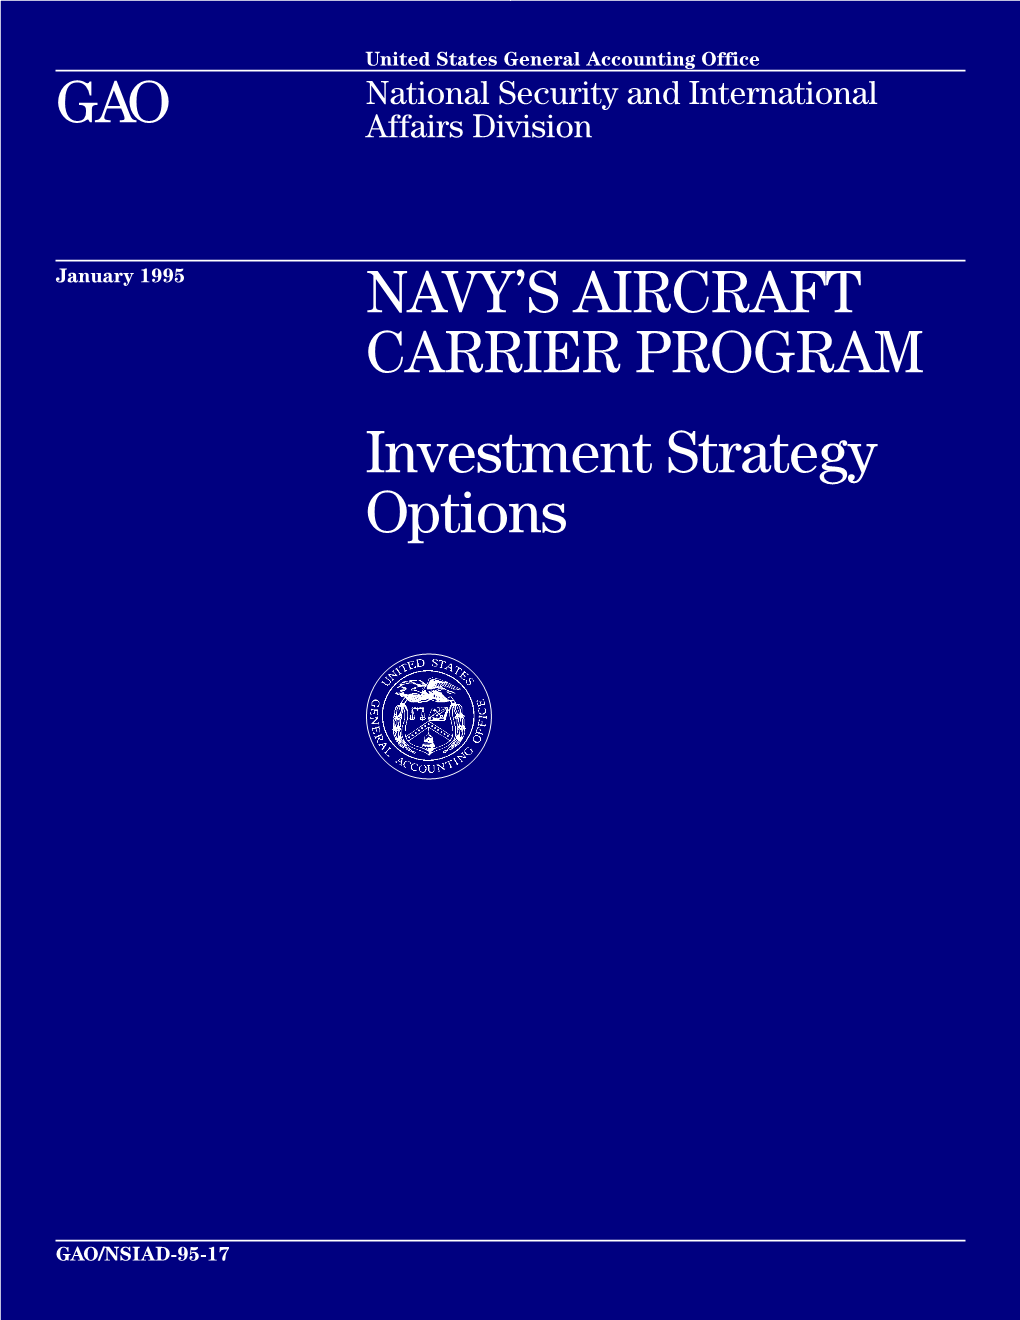 Navy's Aircraft Carrier Program